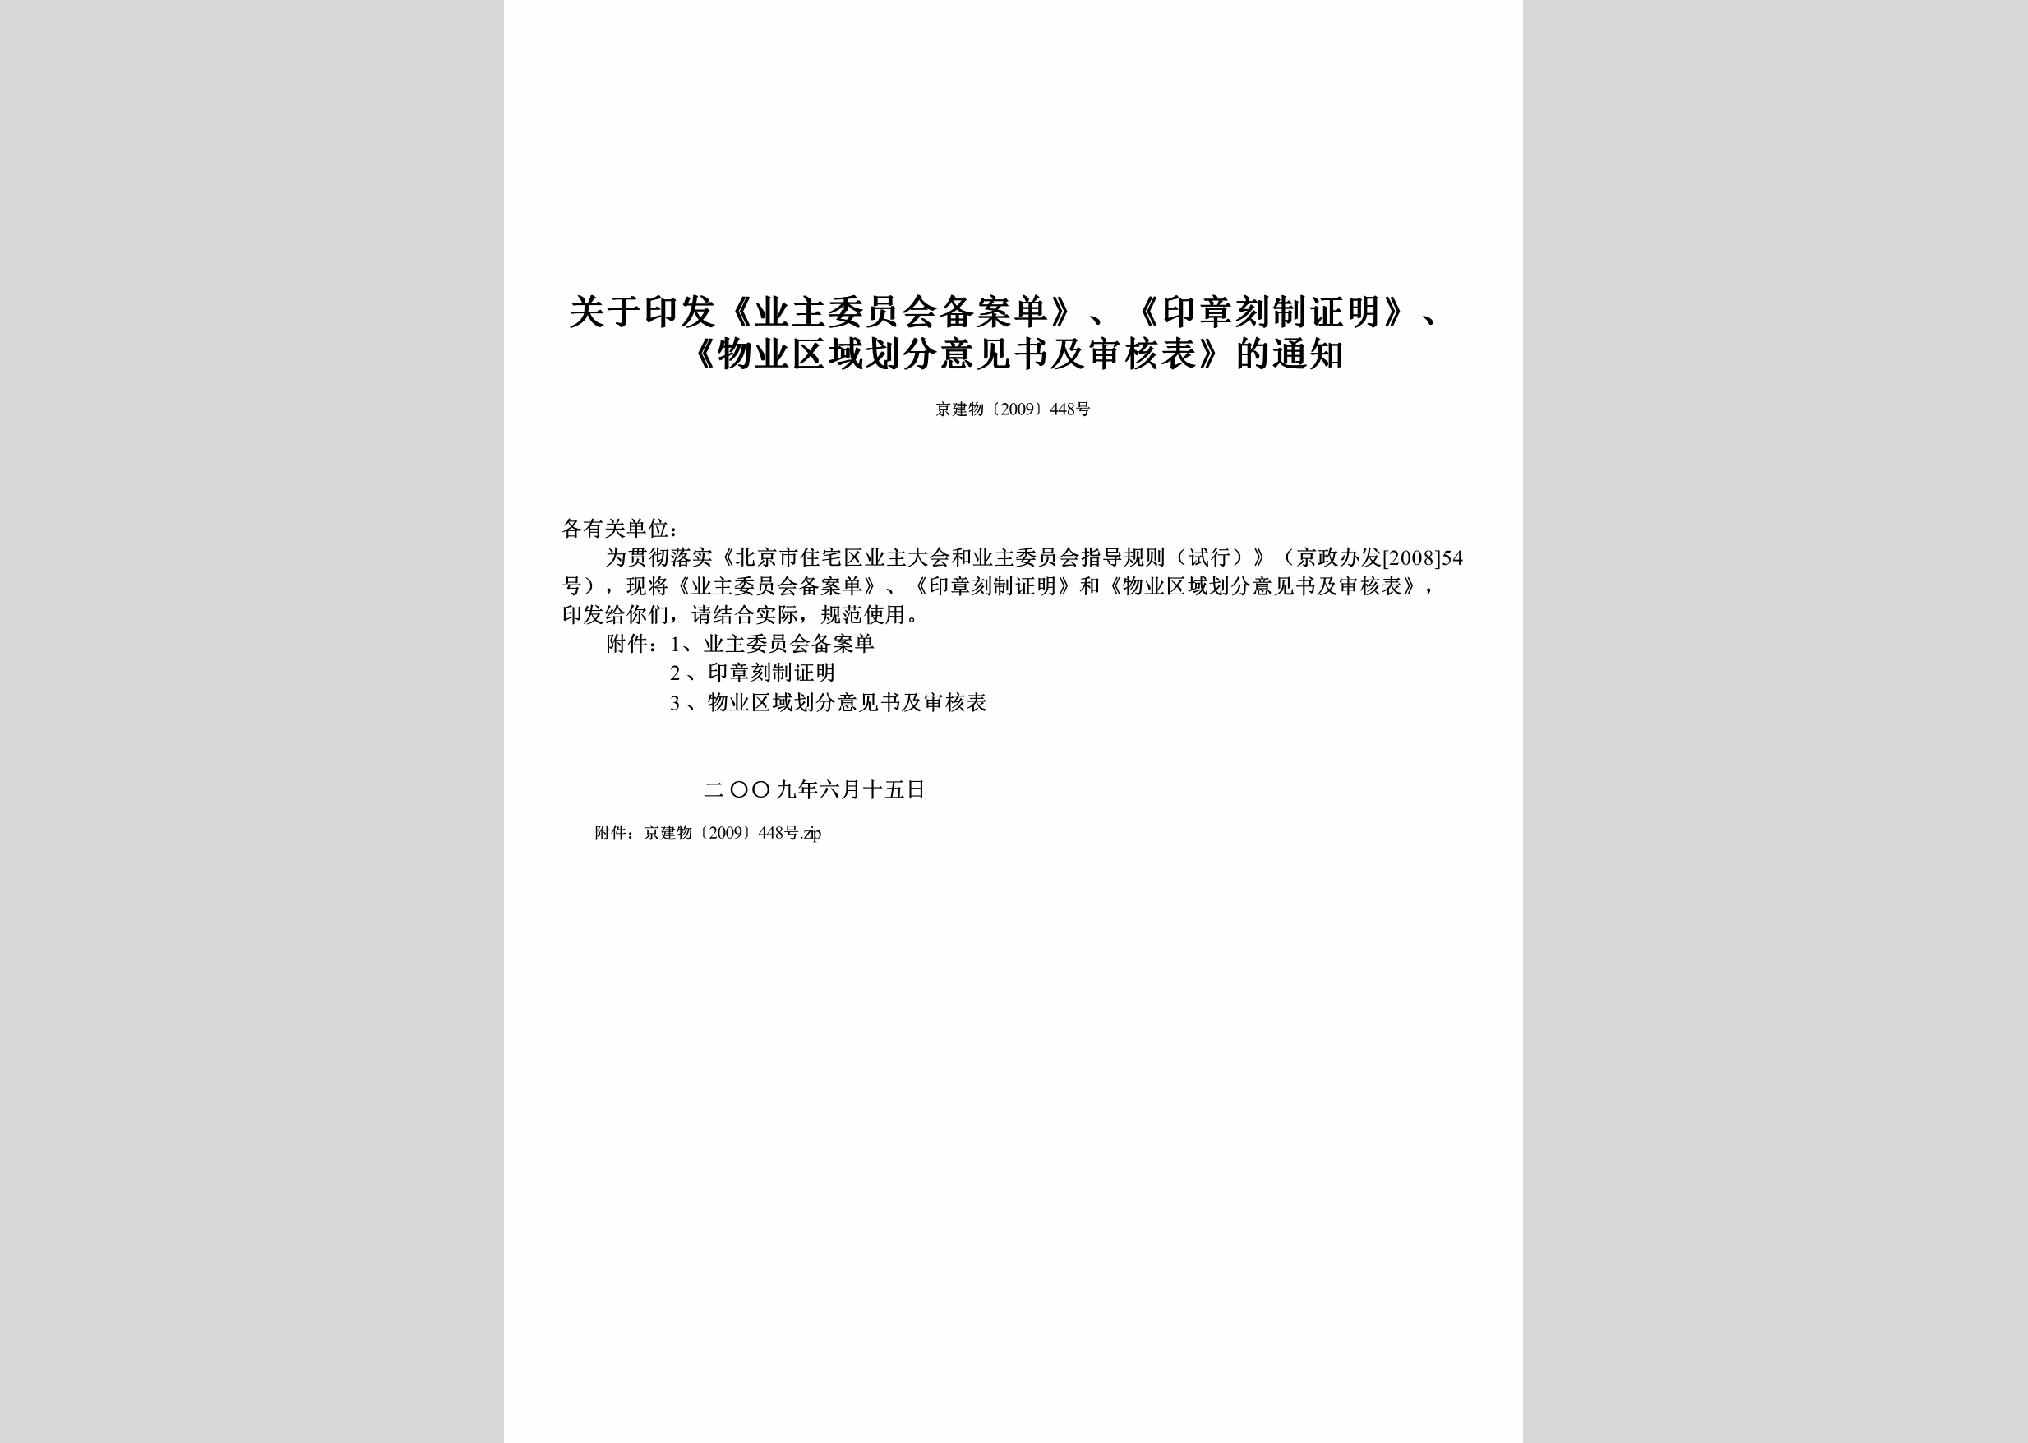 京建物[2009]448号：关于印发《业主委员会备案单》、《印章刻制证明》、《物业区域划分意见书及审核表》的通知